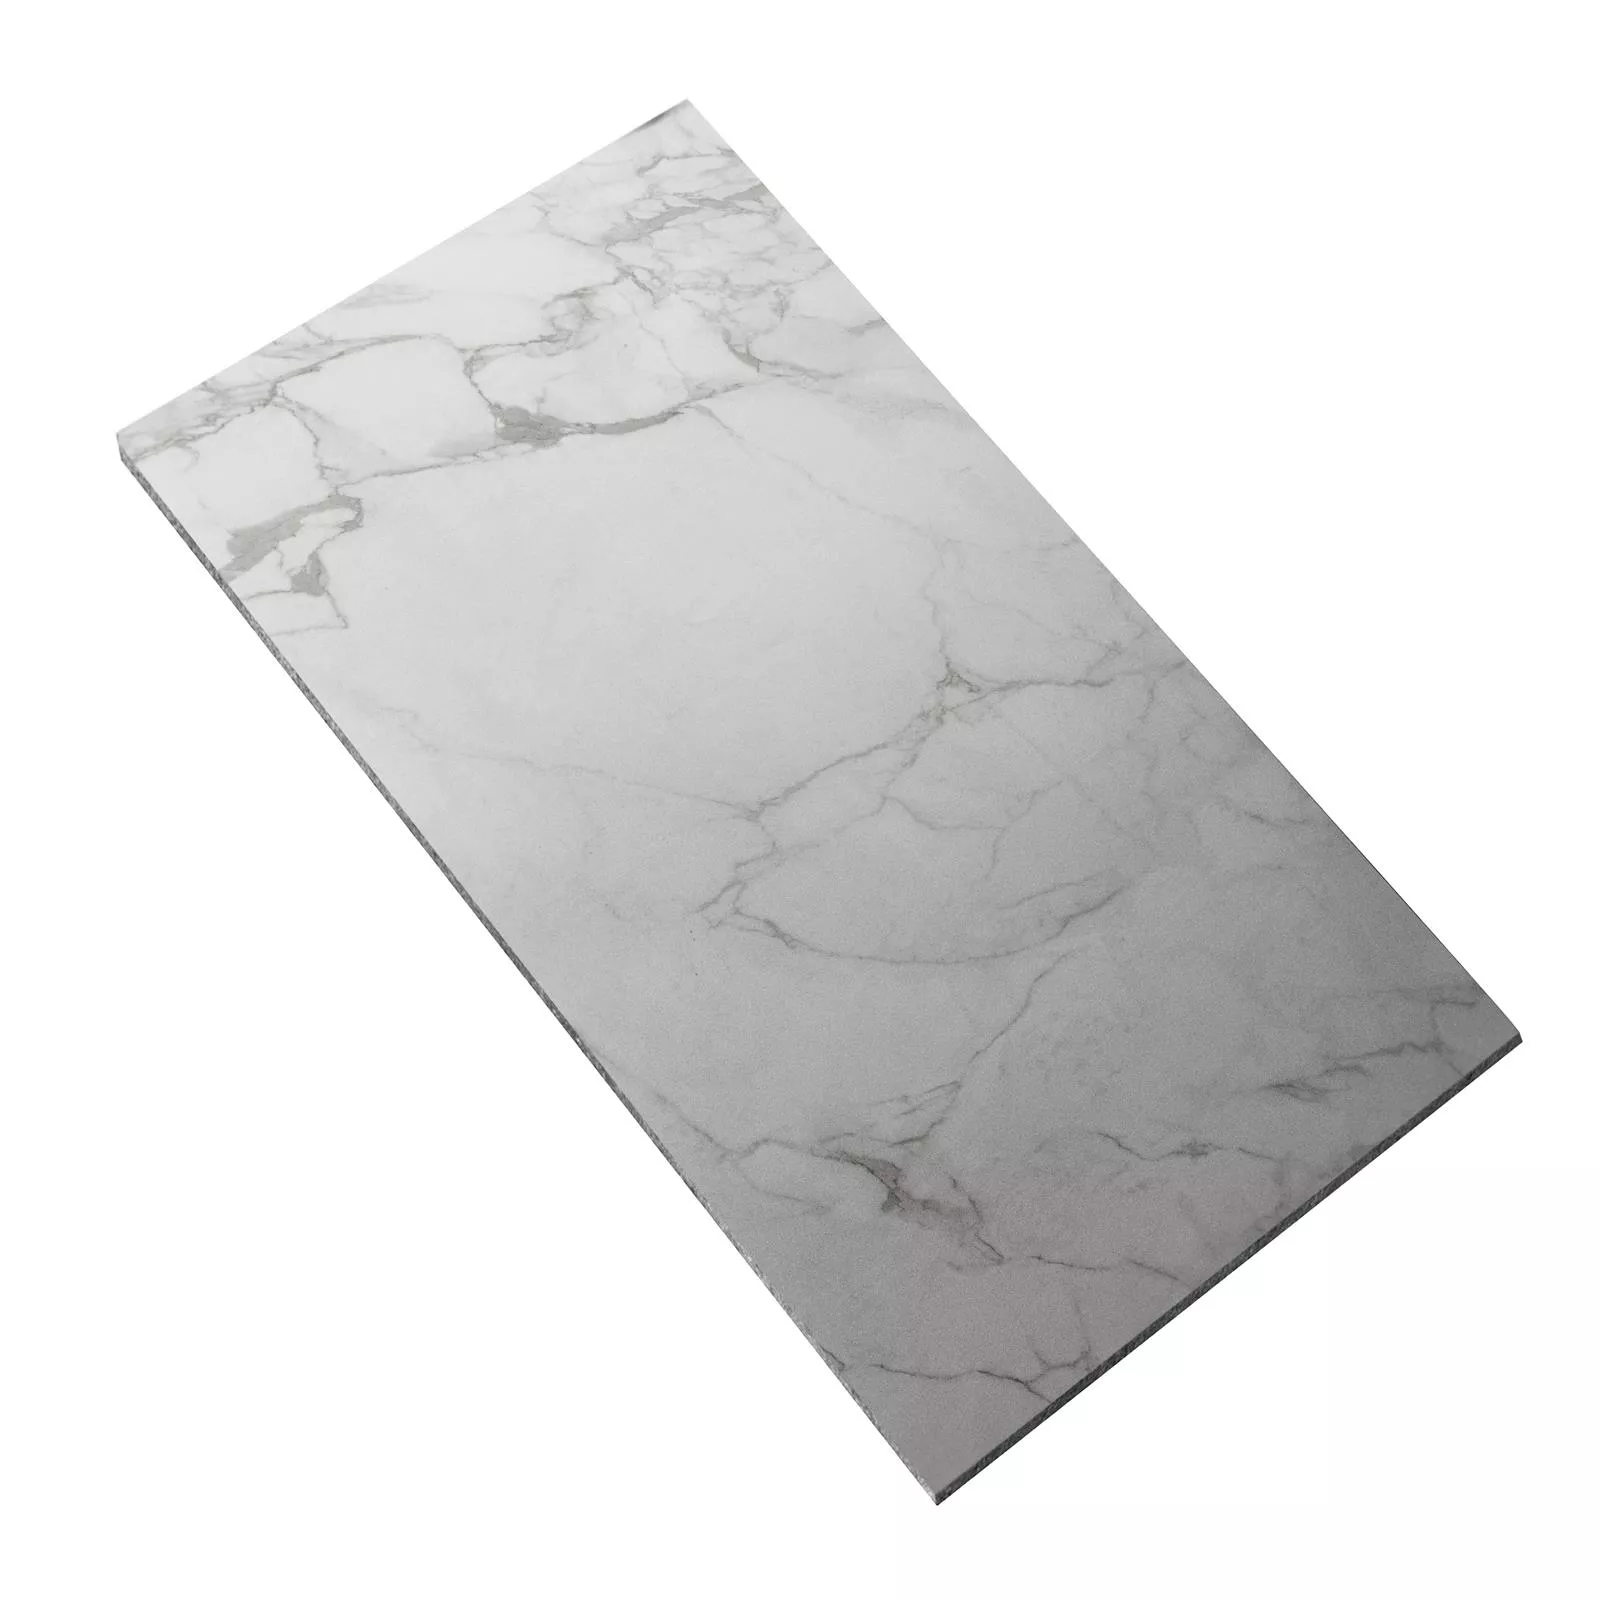 Sample Floor Tiles Enterprise White Marbled Mat 60x120cm